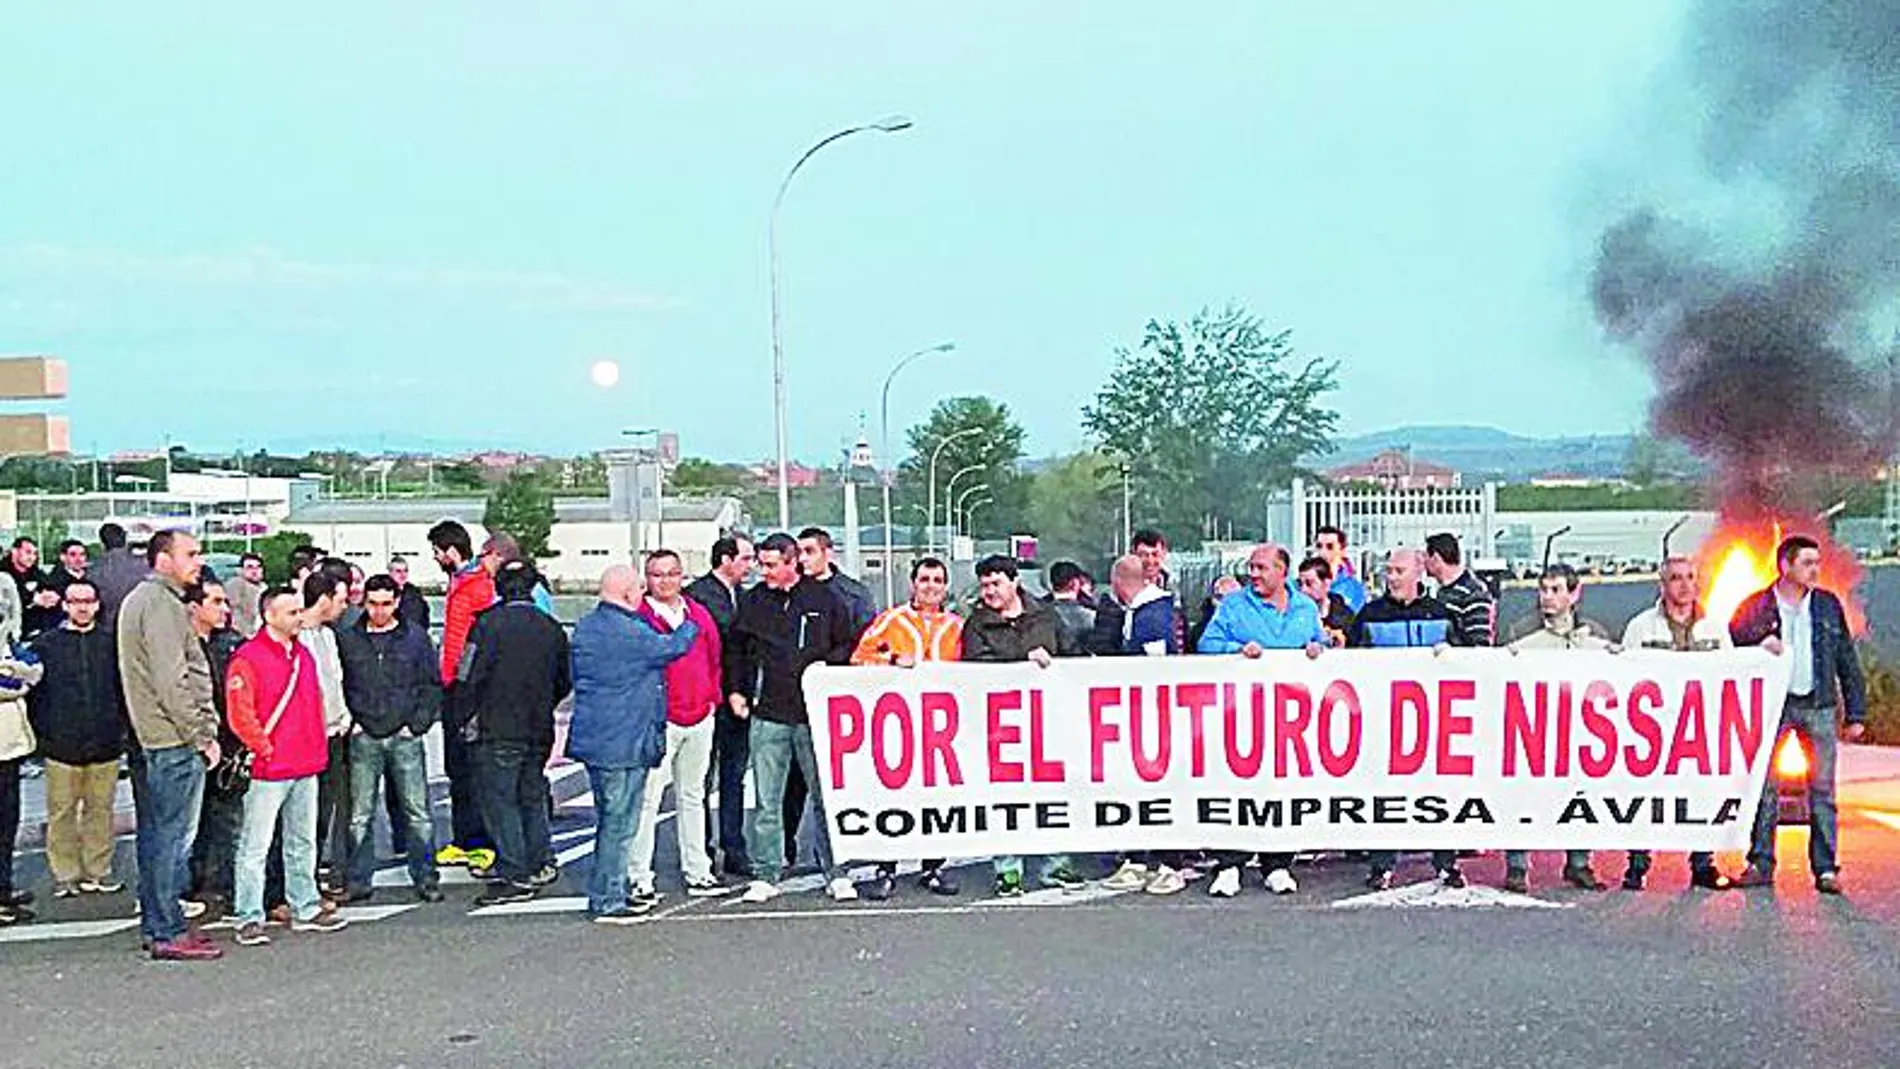 Jornada de huelga en la factoría de Nissan en Ávila.